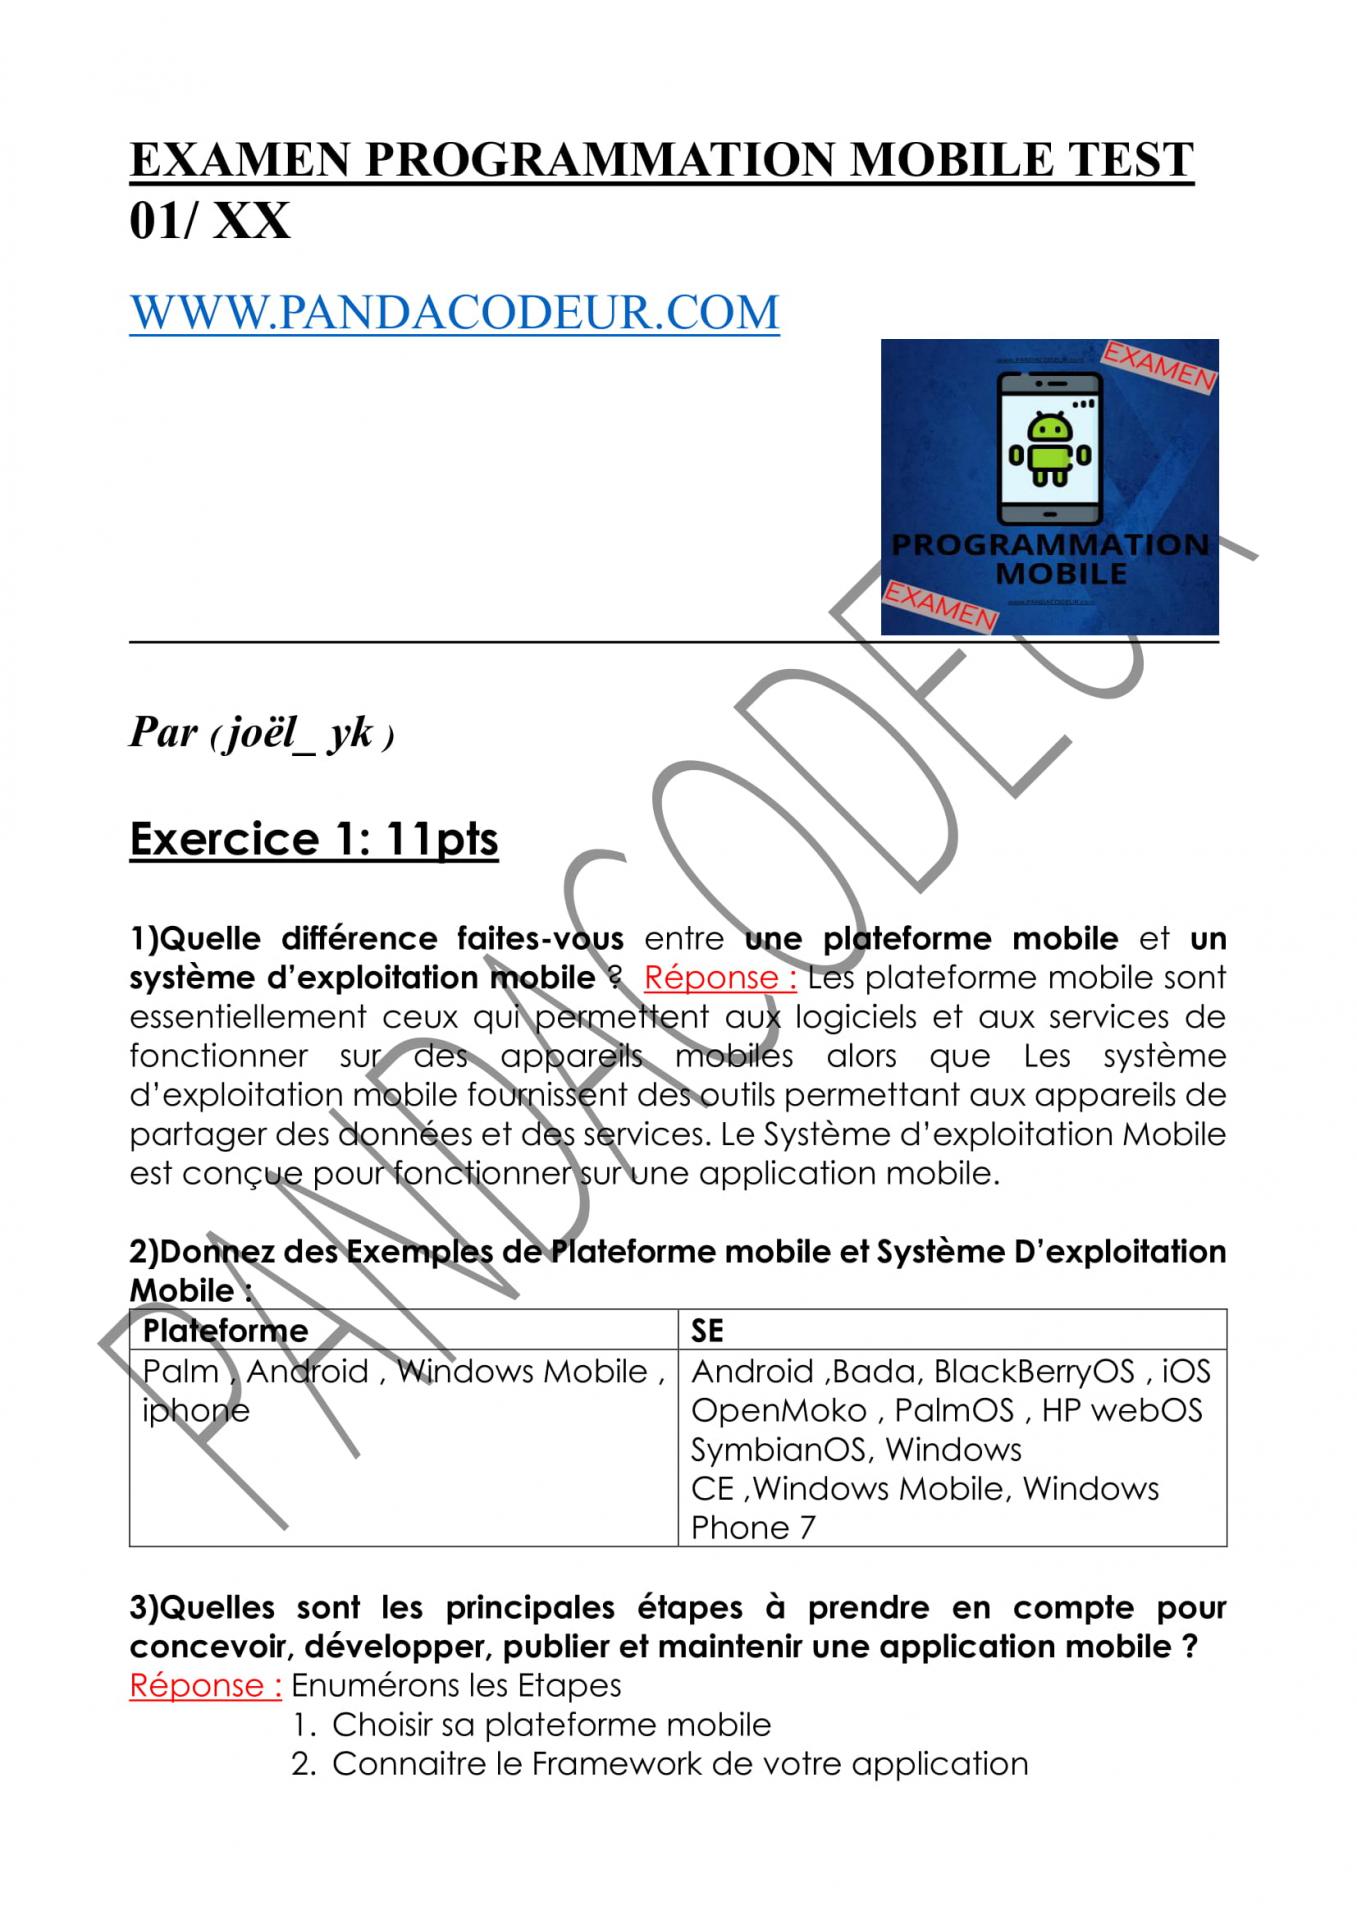 Examen 01 pandacodeur prg mob 1